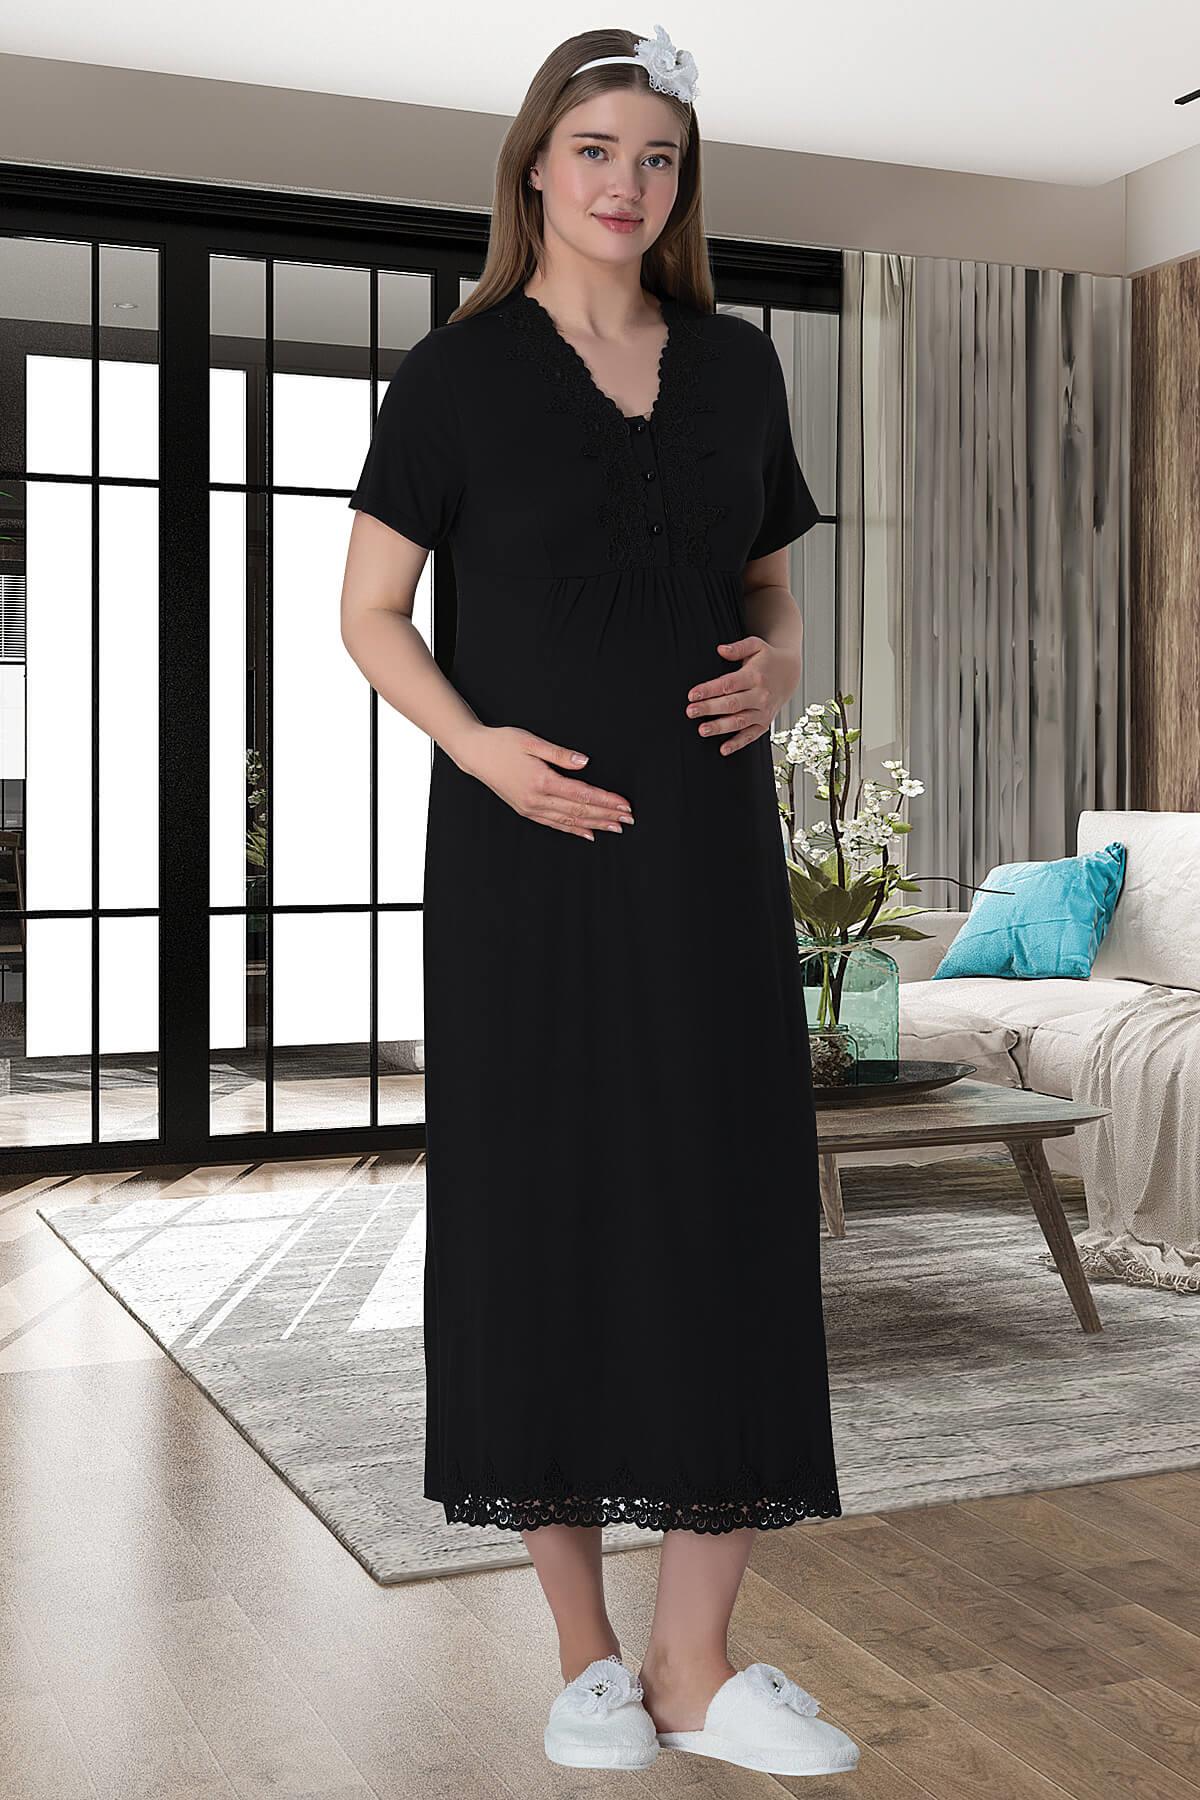 Shopymommy 6064 Patterned Lace 4 Pieces Maternity & Nursing Set Black